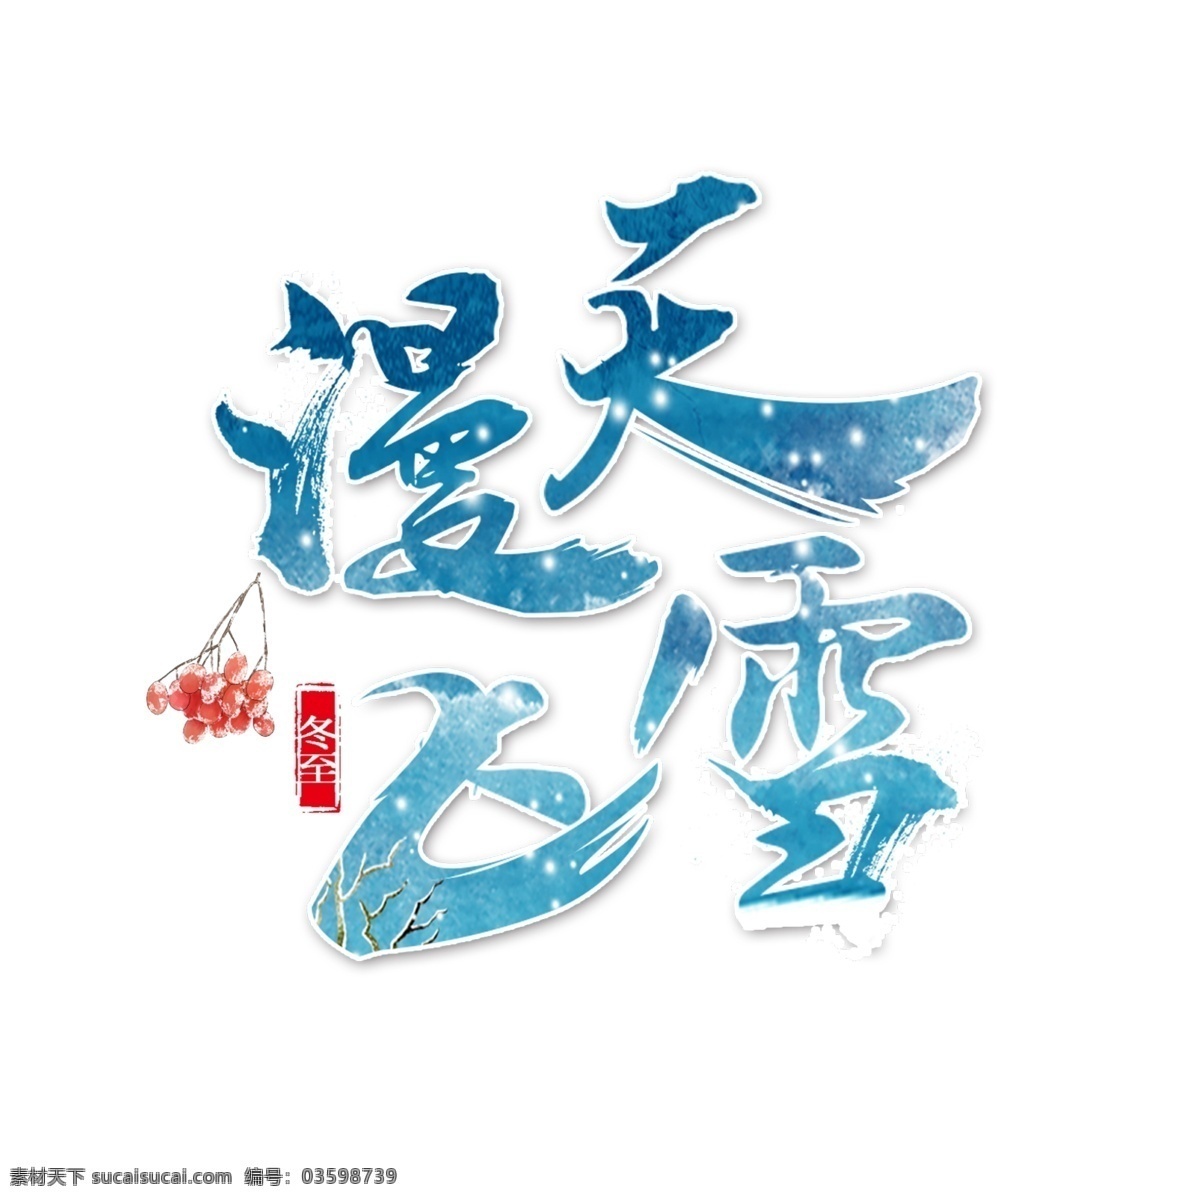 冬天 季节 艺术 字 中国风 古典 字体设计 绘画 水墨画 冬至 节气 艺术字 枝头